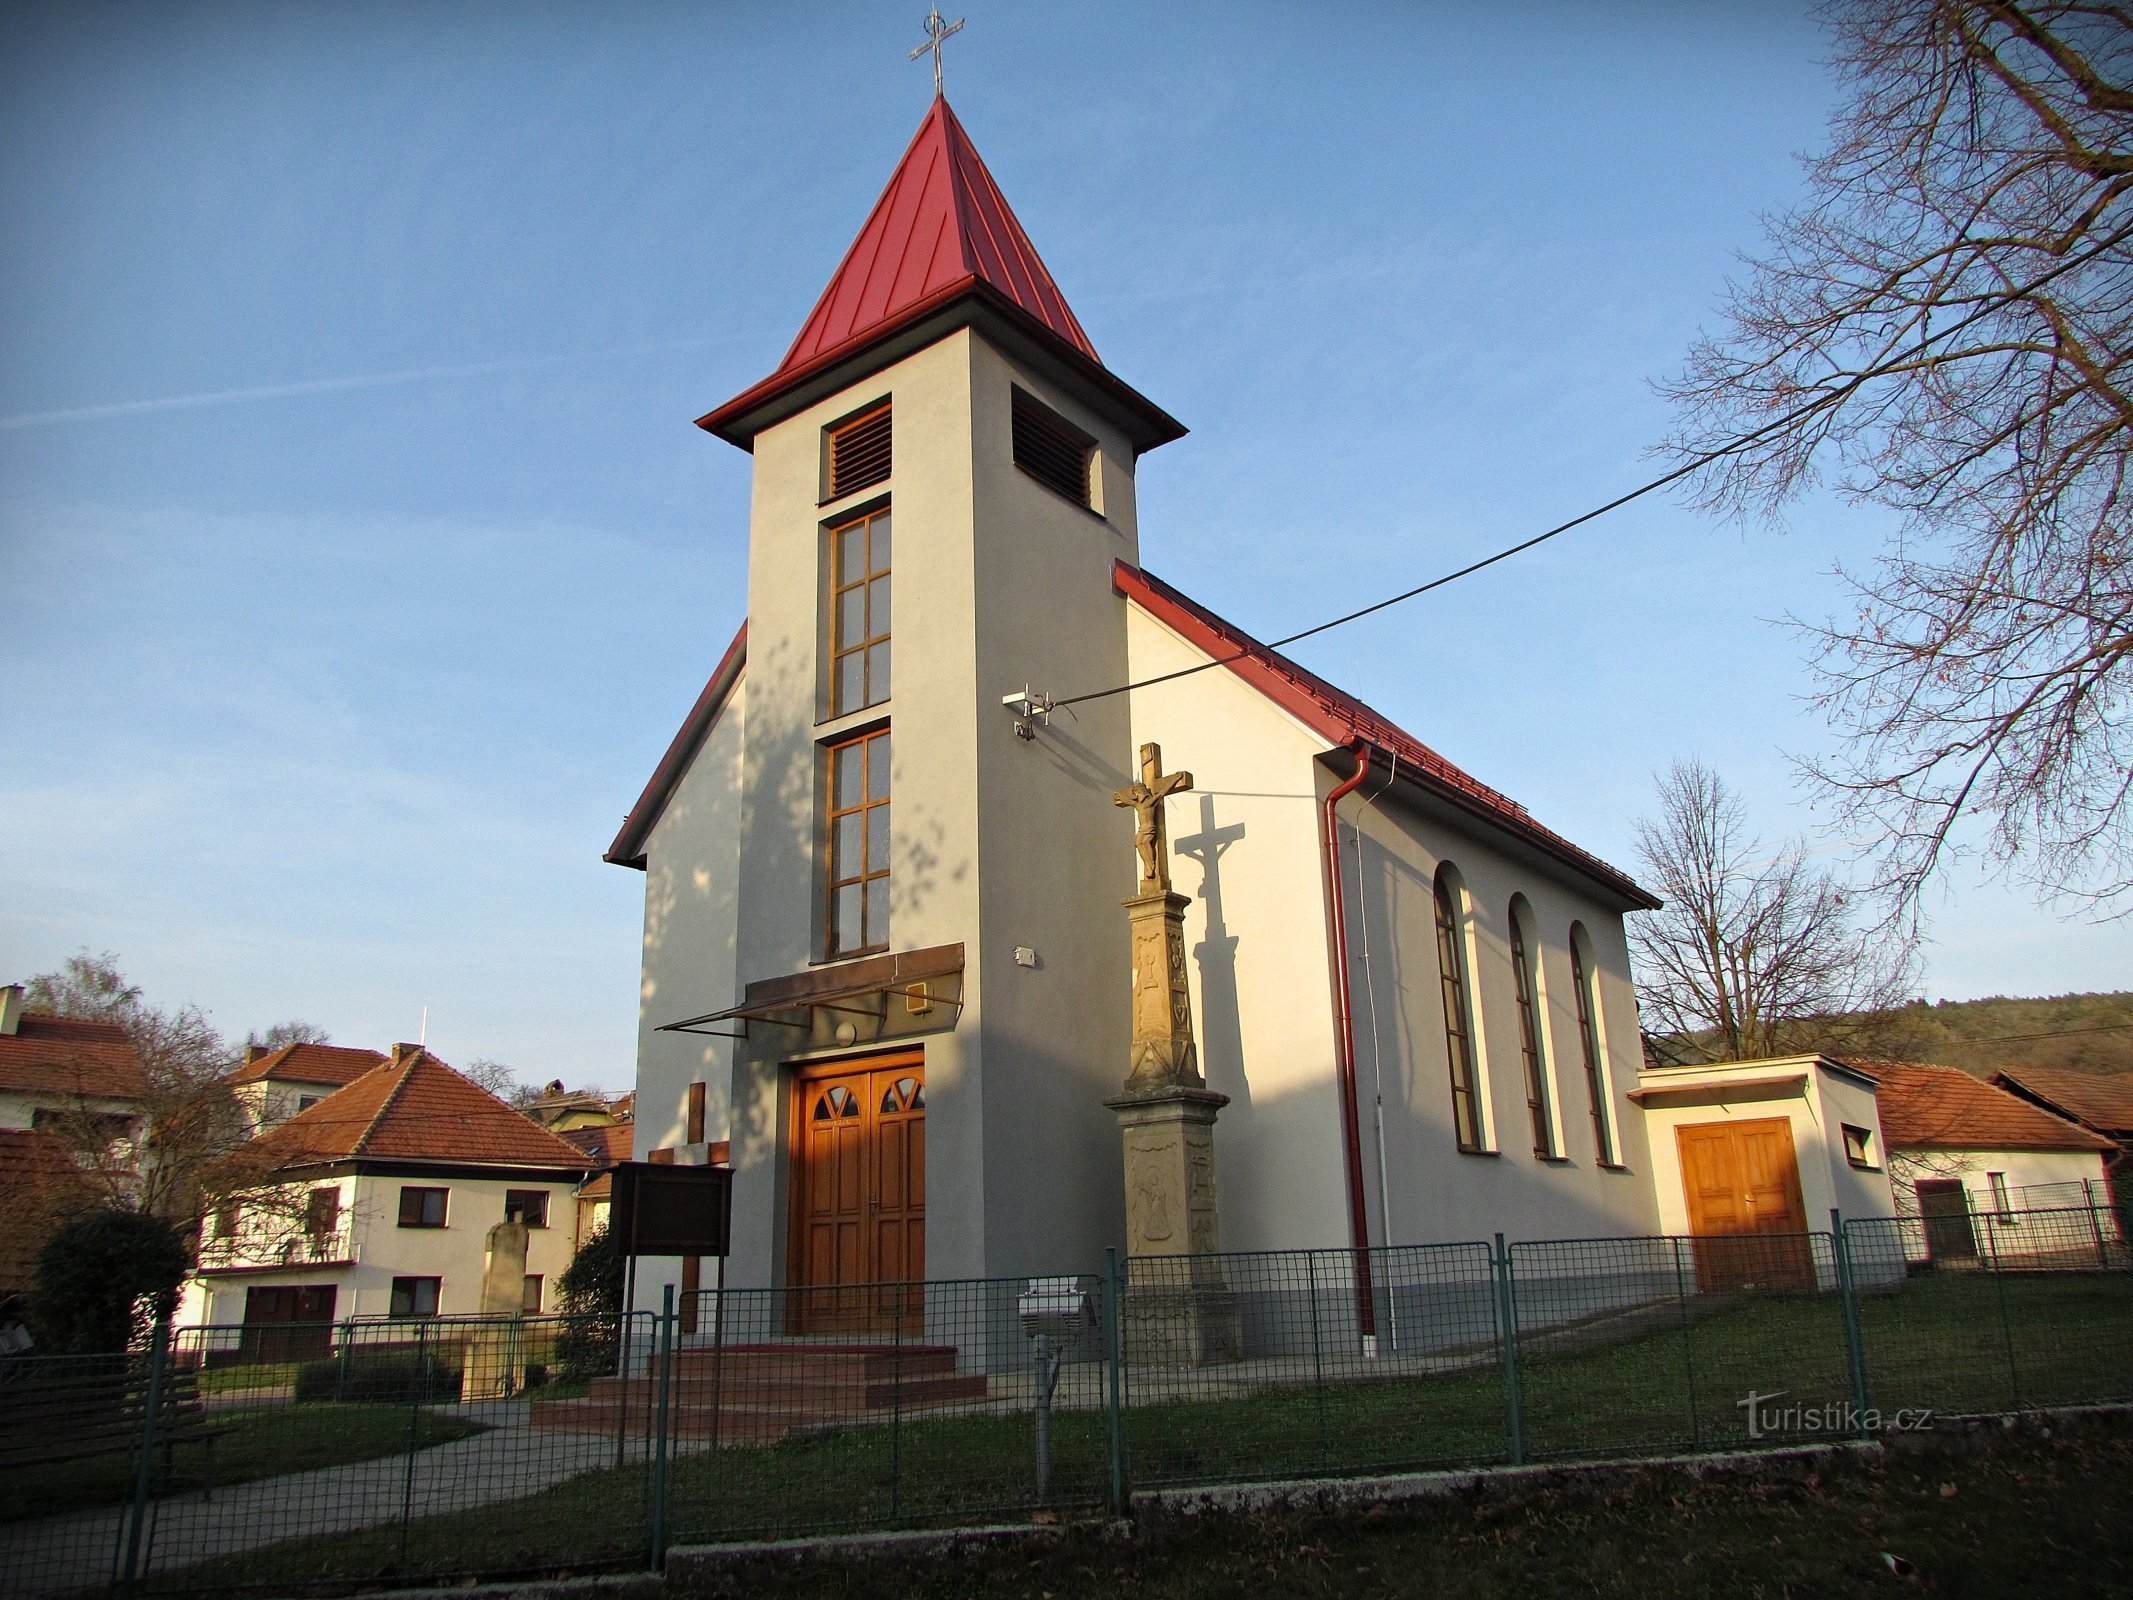 Kaňovice - Каплиця Діви Марії